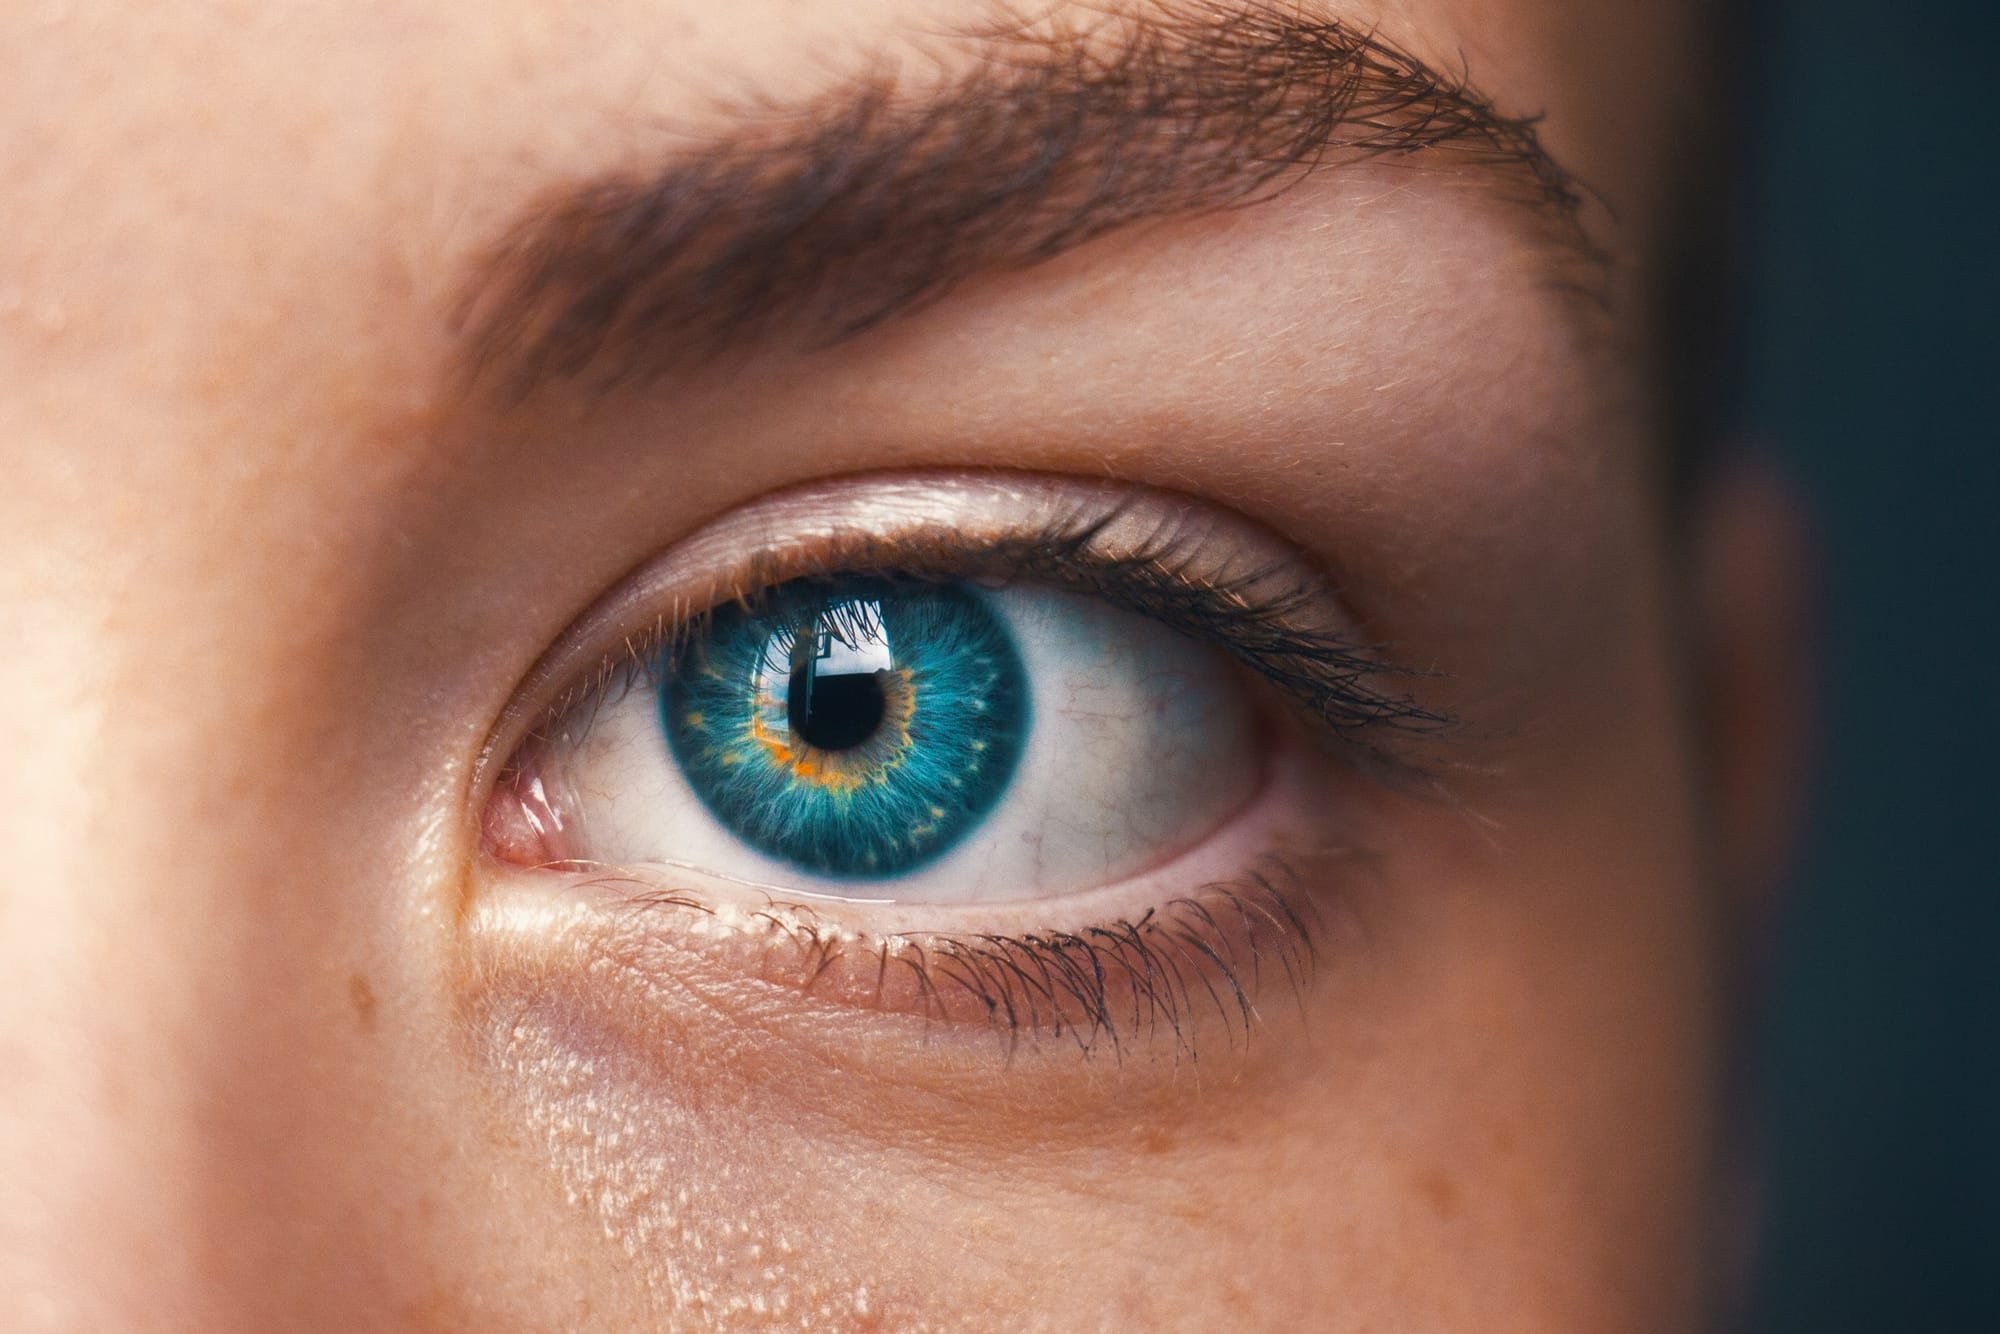 كثرة رفة العين "البربشة" قد تكون بسبب نقص فيتامين بـ 12